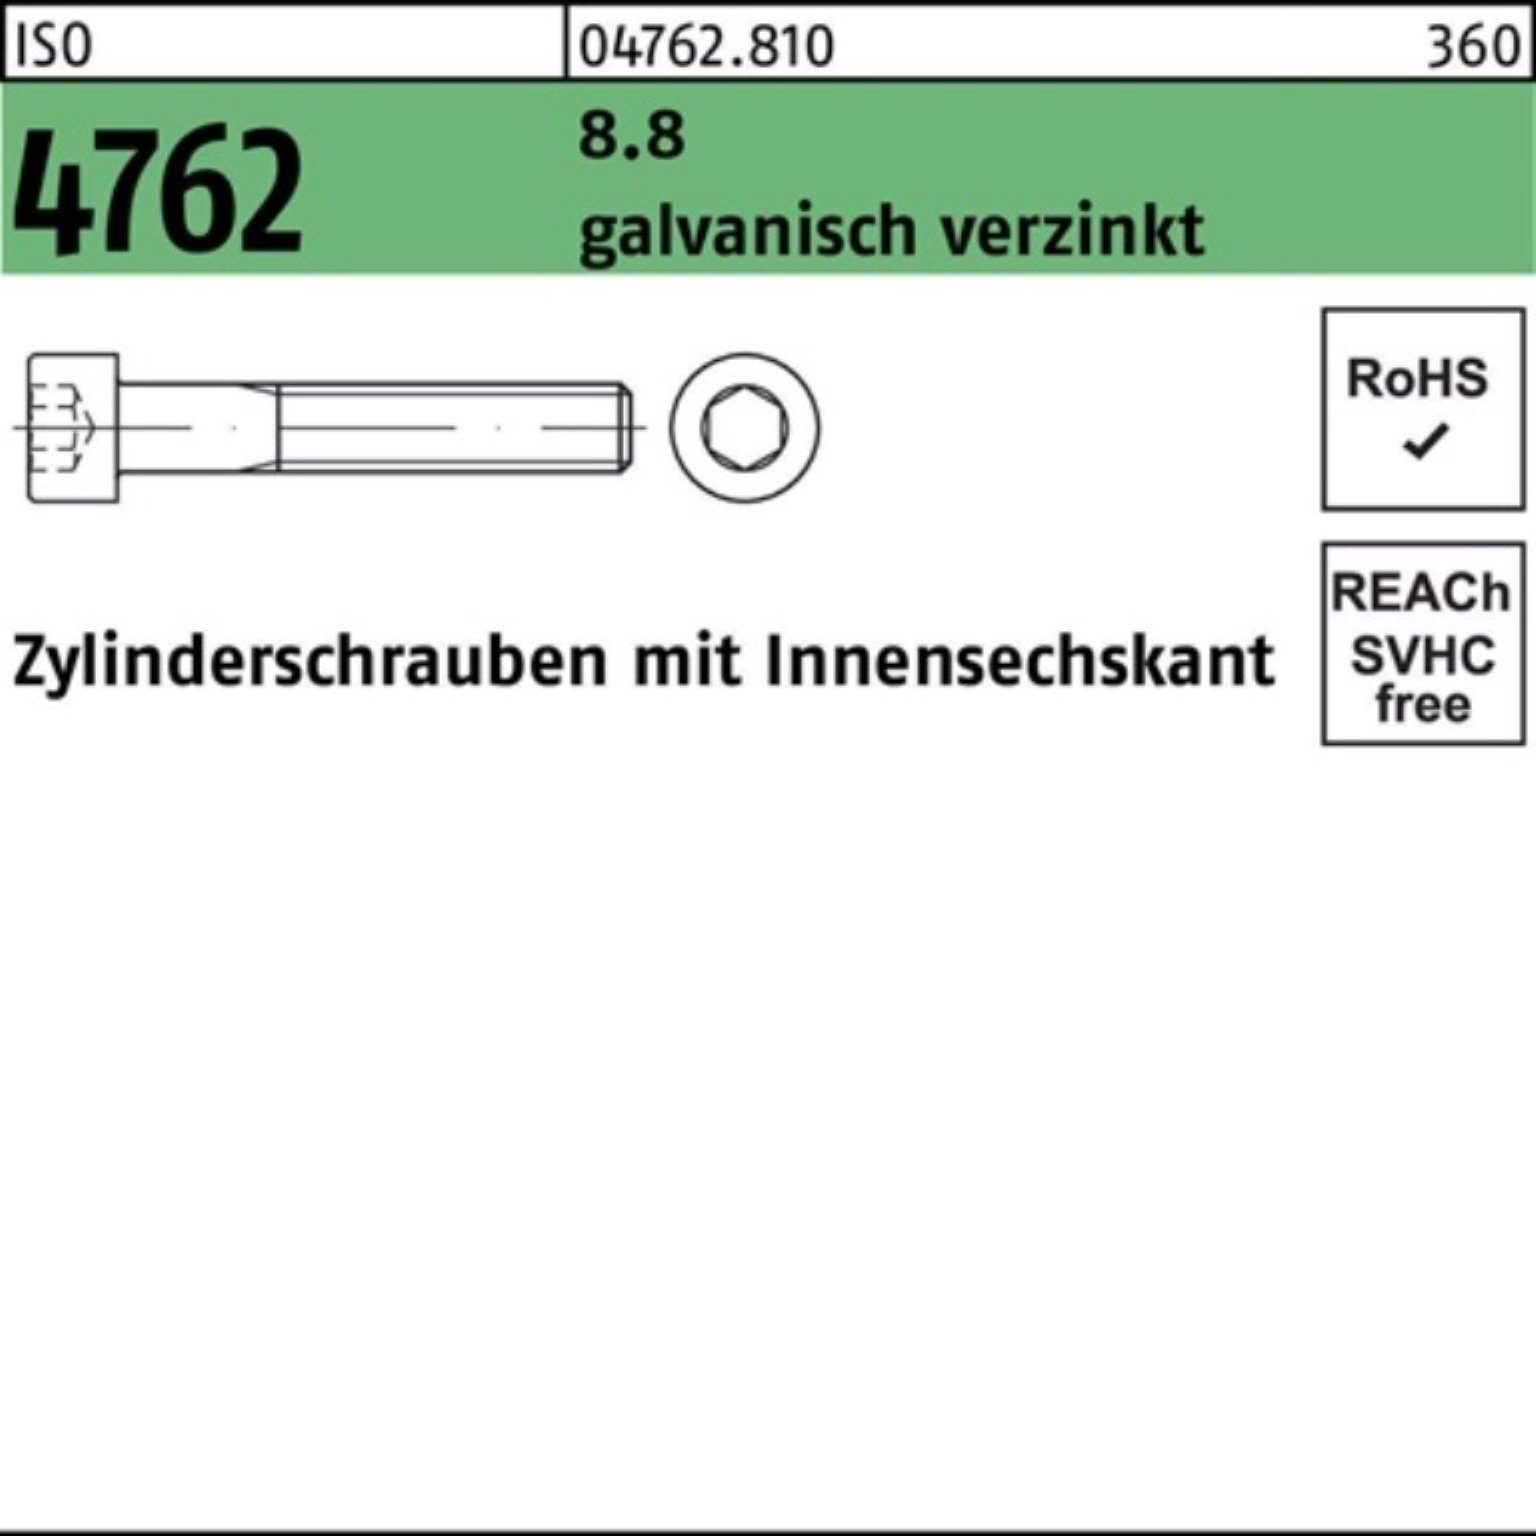 Reyher Zylinderschraube 100er Pack Zylinderschraube M12x80 5 8.8 ISO galv.verz. 4762 Innen-6kt